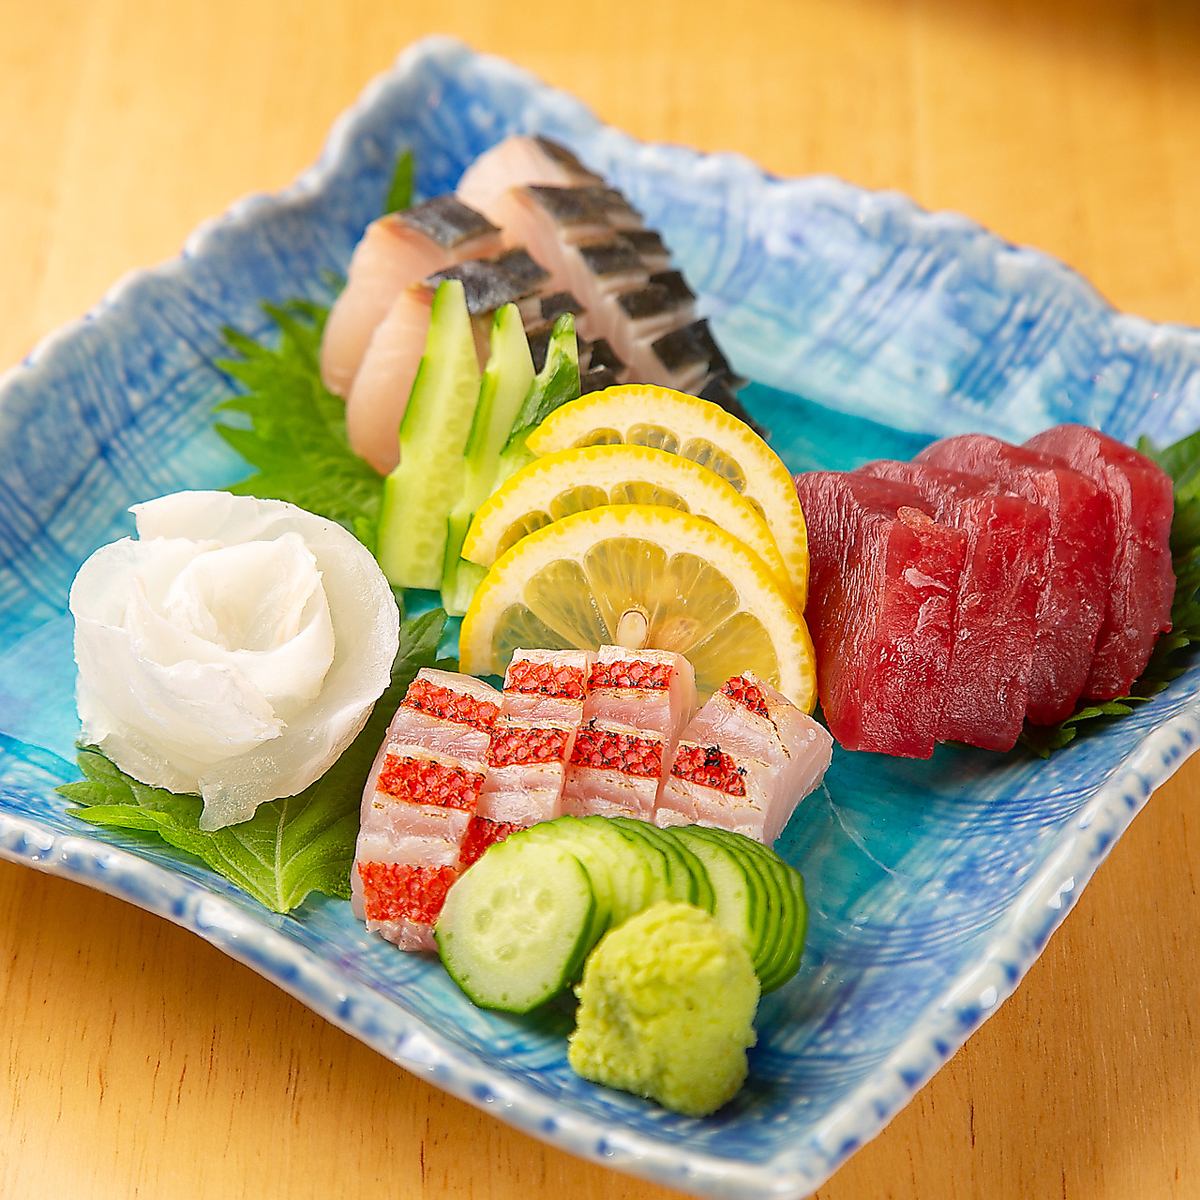 新鮮な魚介類を、お刺身や様々なお料理でお召し上がりください